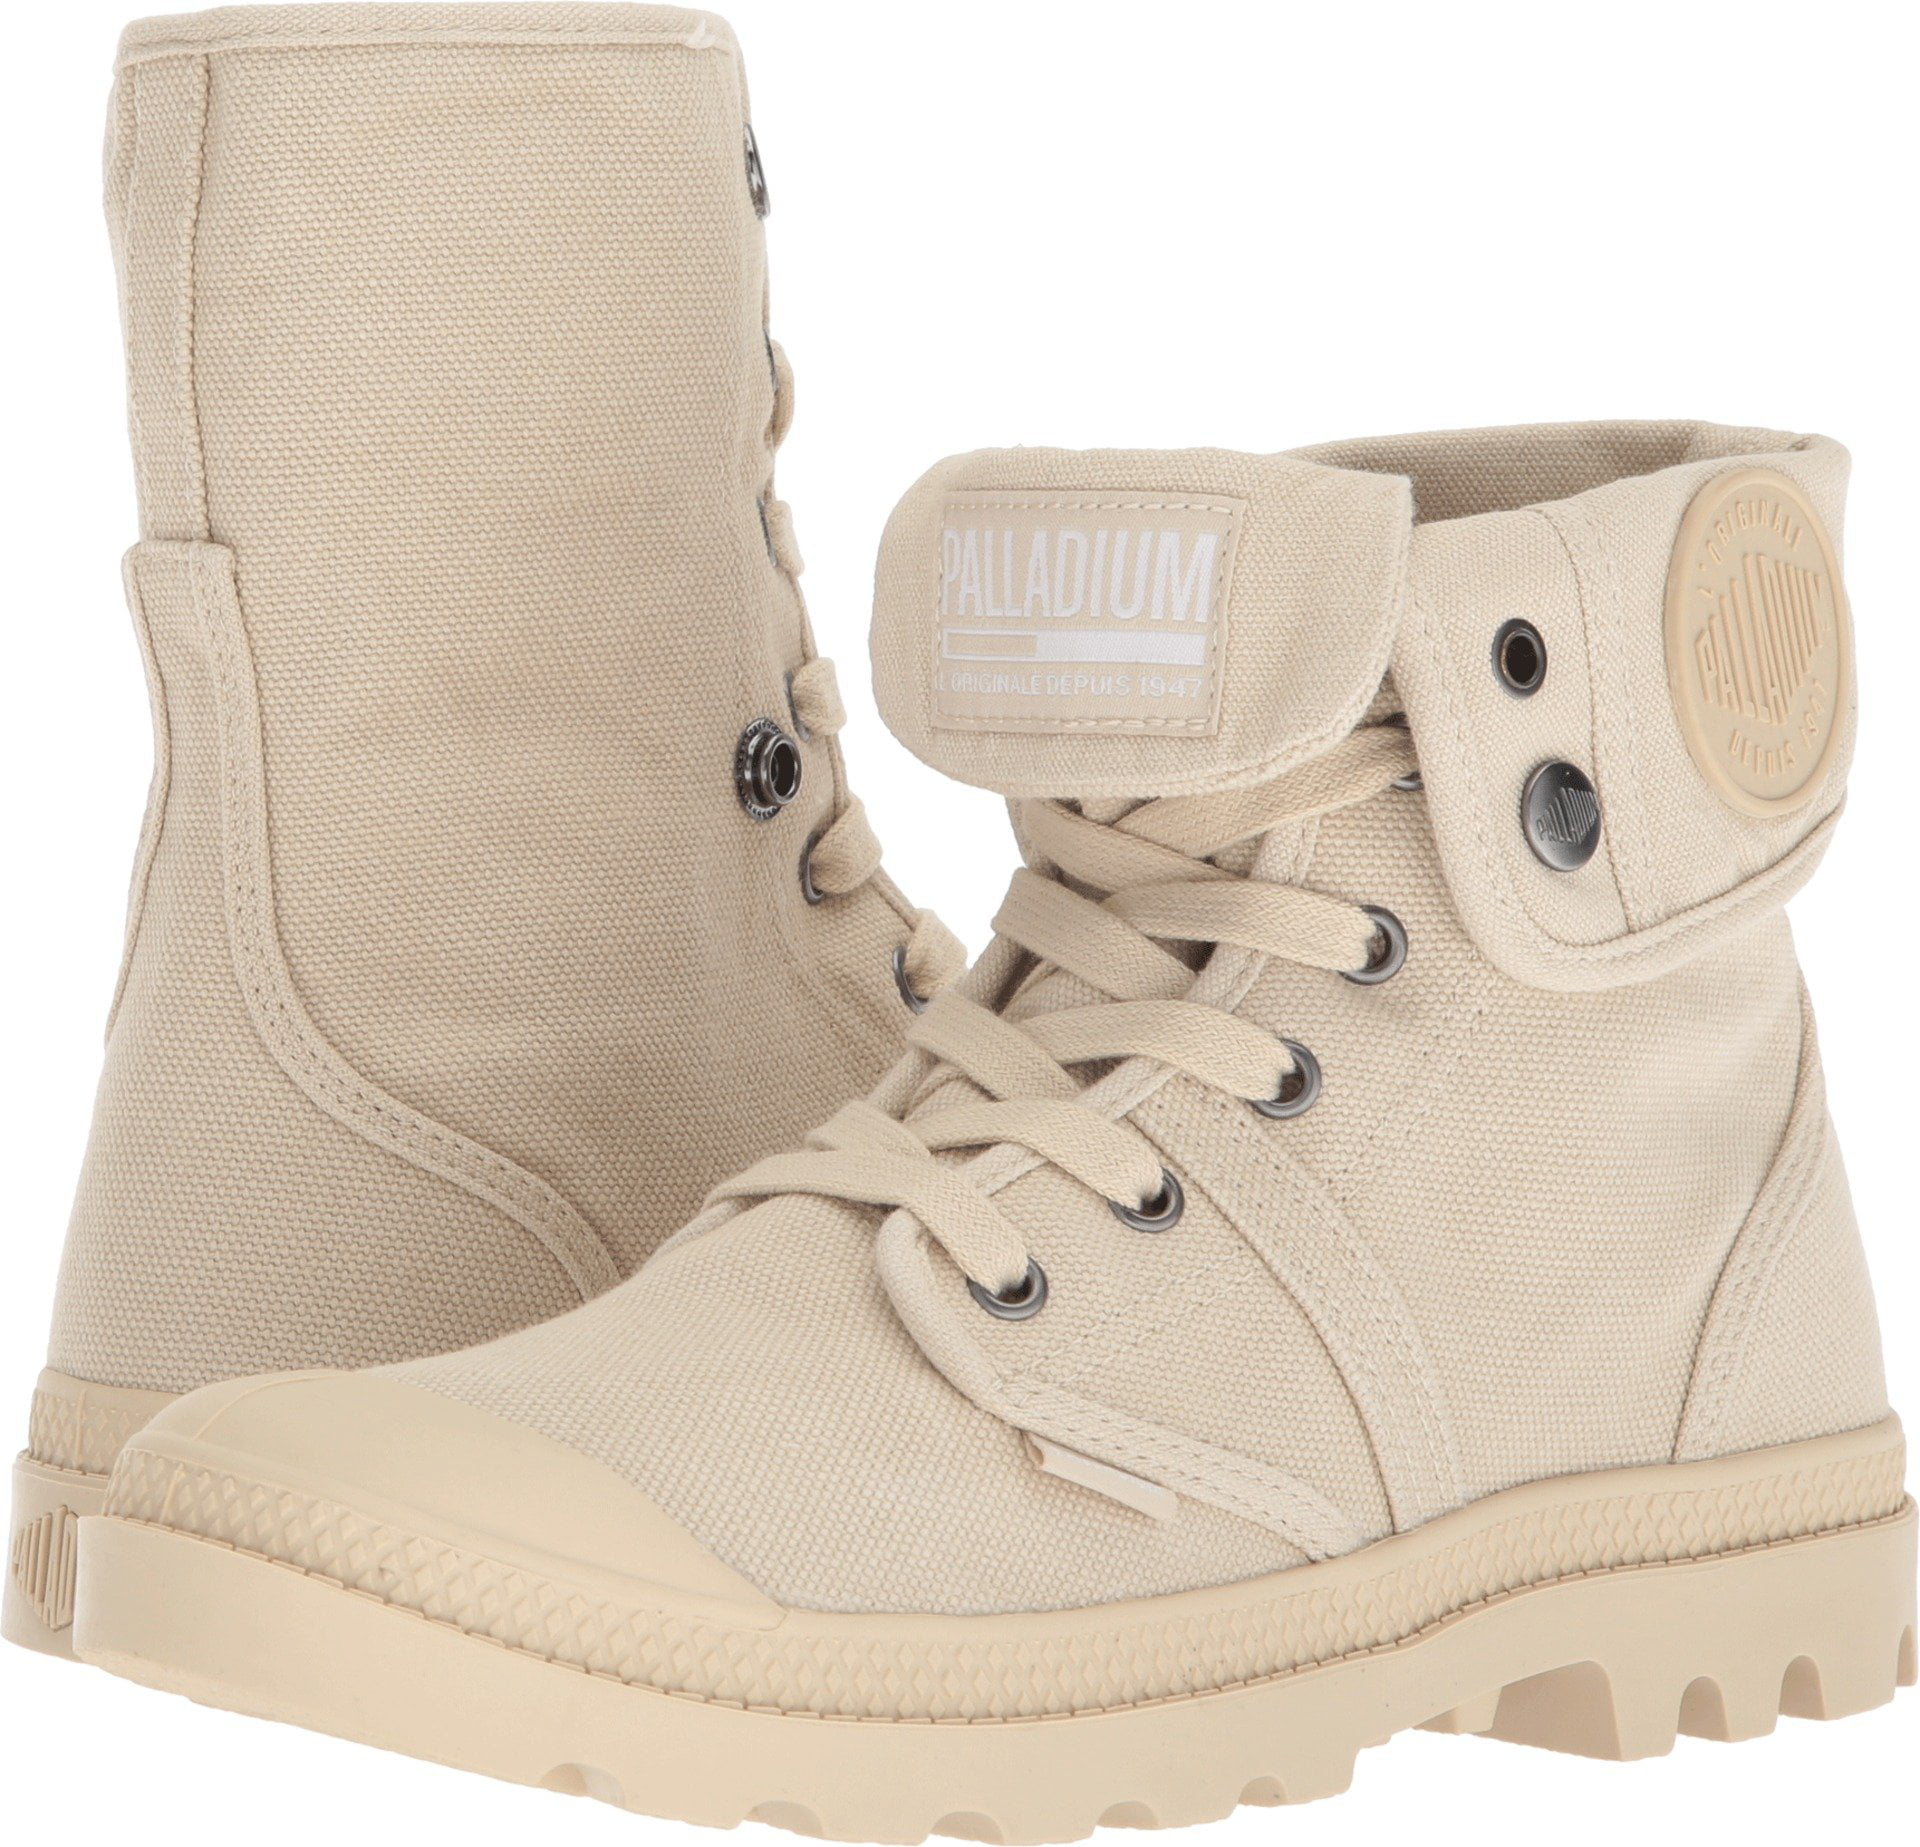 Palladium Baggy Schuhe High Top Women Sneaker sahara ecru 92353-238 Boots 